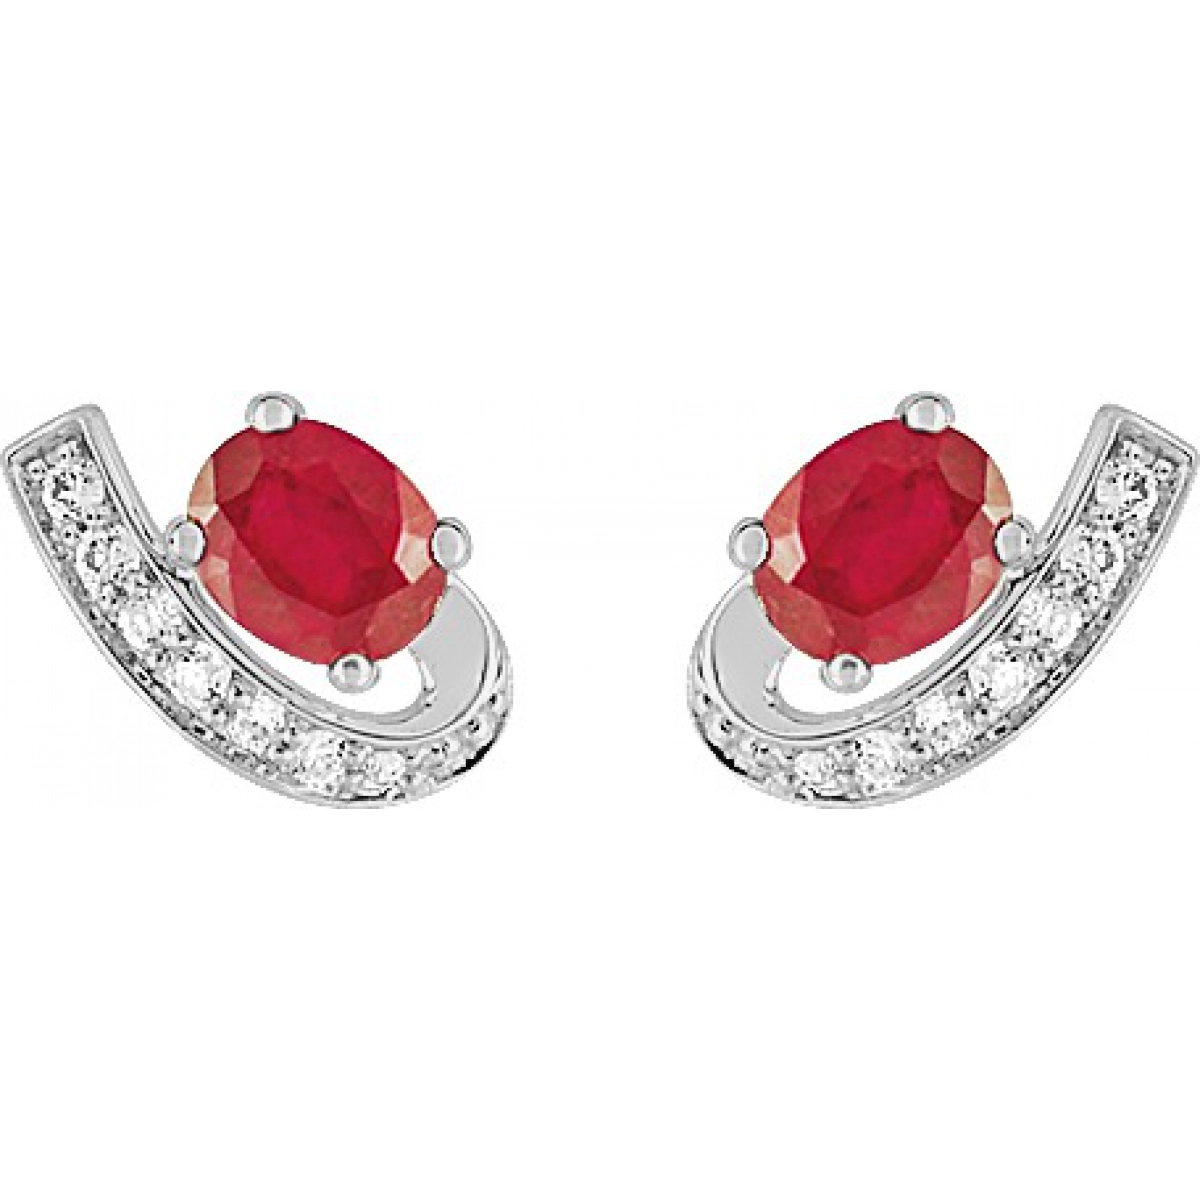 Earrings pair w. tr ruby and cz 9K WG  Lua Blanca  29PZ04GRT.0